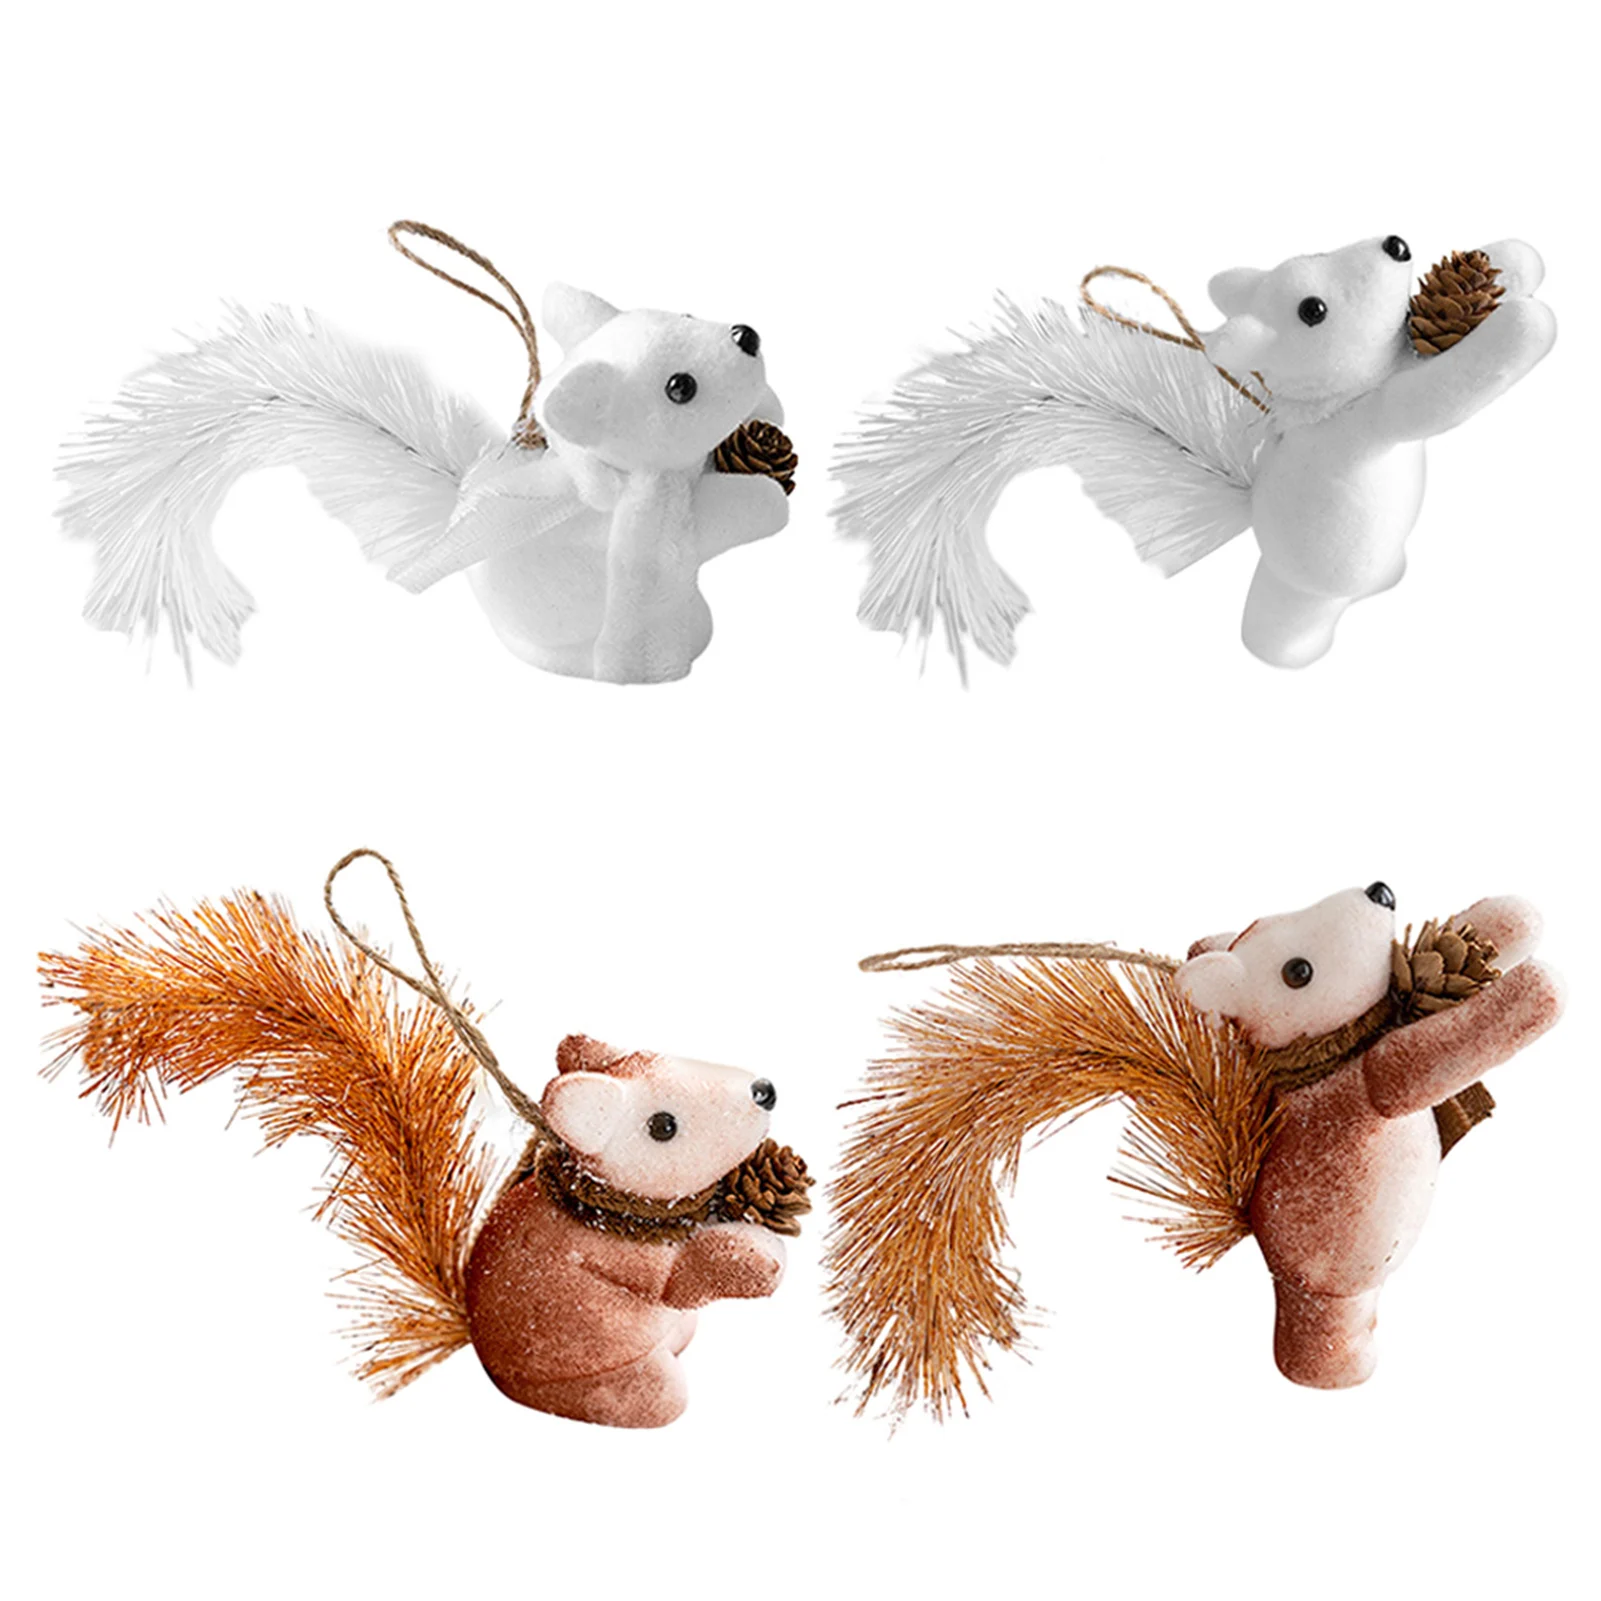 2db Aranyos mókus-játék medál Chirstmas fához személyre szabott ünnepi parti dekoráció karácsonyfára - 2